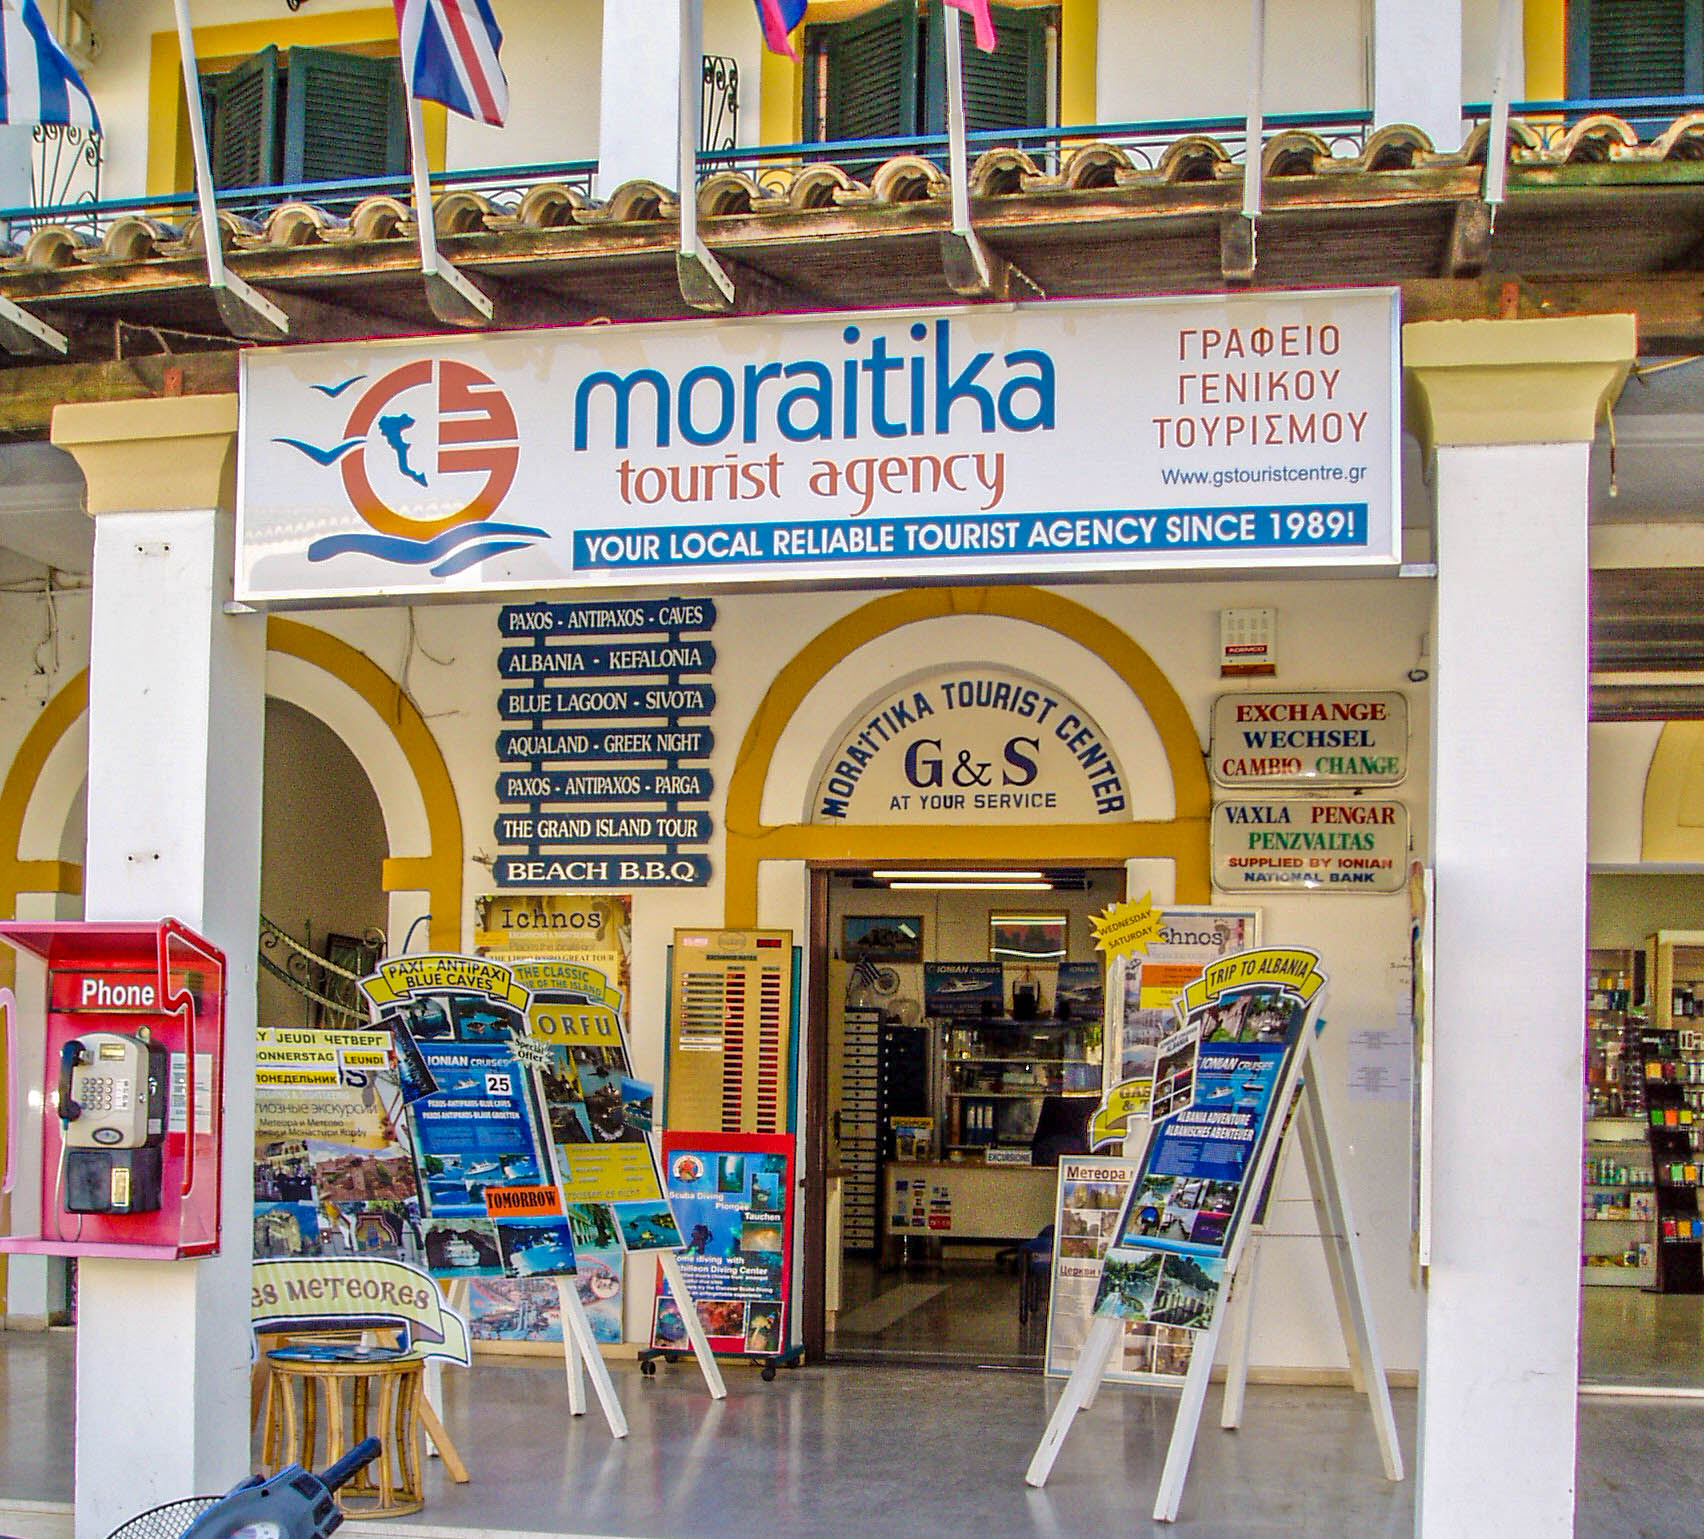 Moraitika Tourist Agency - Office